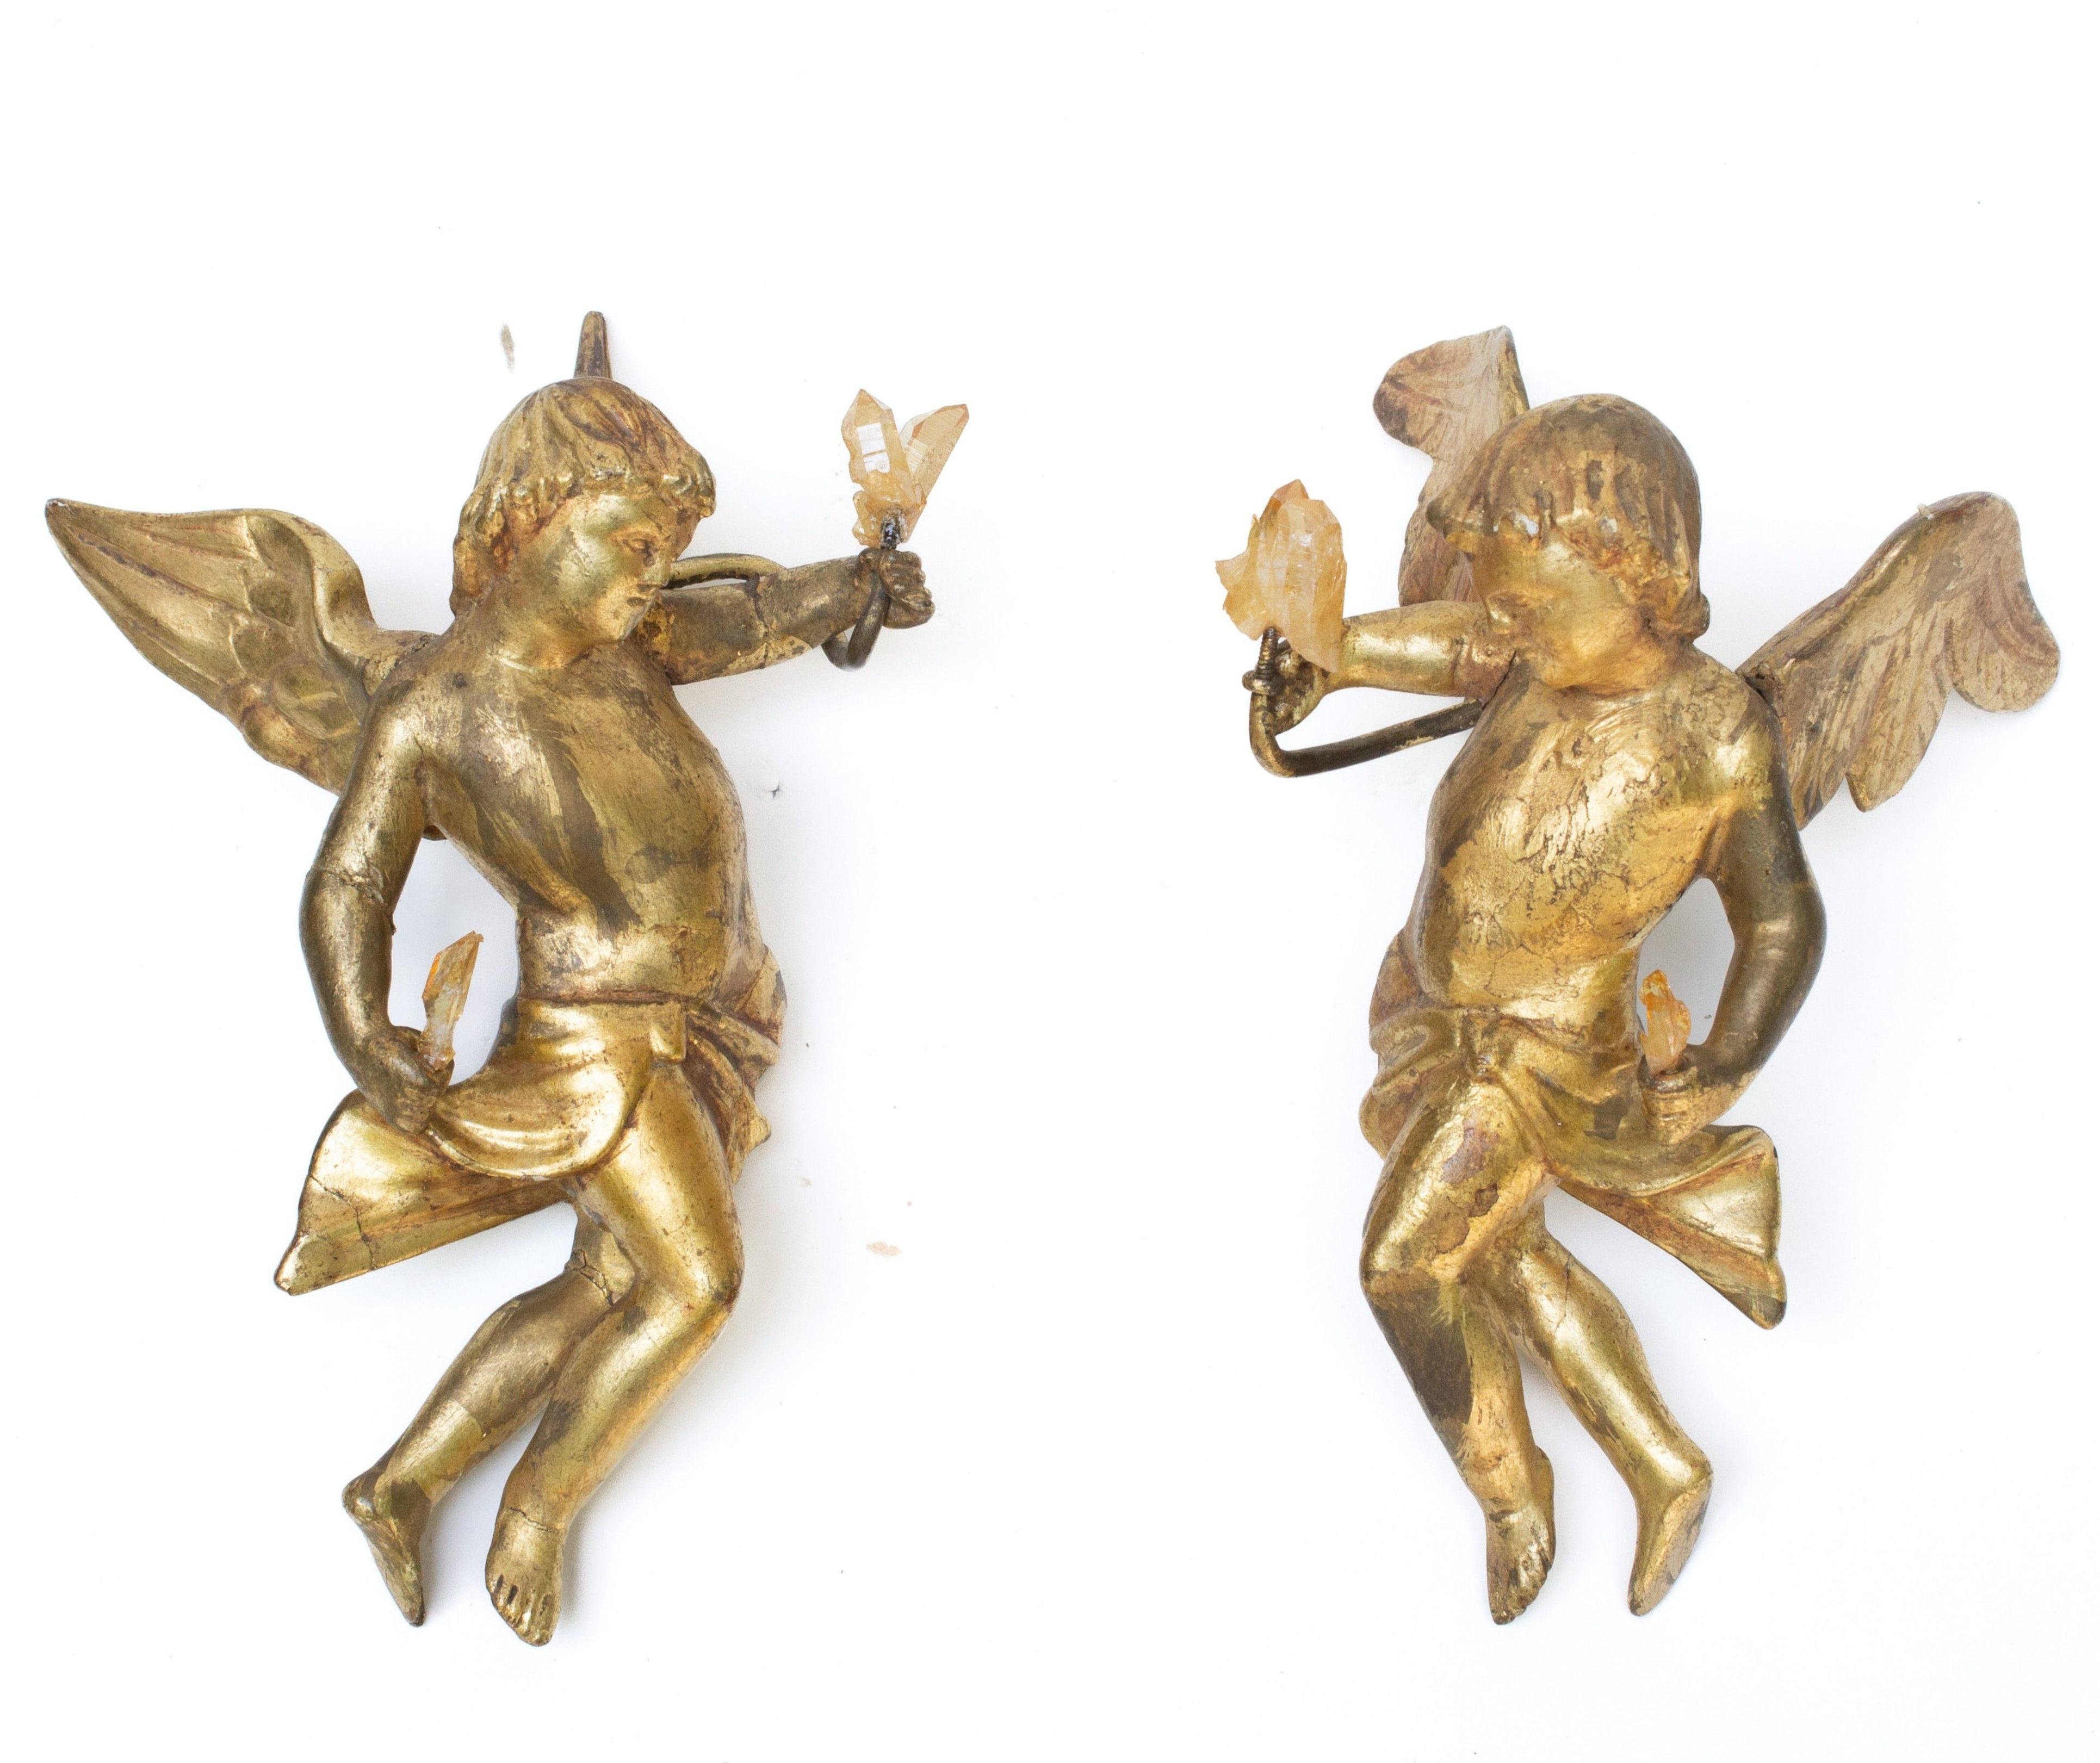 Paar italienische handgeschnitzte Blattengel aus dem 18. Jahrhundert mit goldenen Quarzkristallen. Das skulpturale Paar ist mit den originalen Metallaufhängern zum Aufhängen an der Wand versehen. Die handgeschnitzten Engel waren einst Teil einer